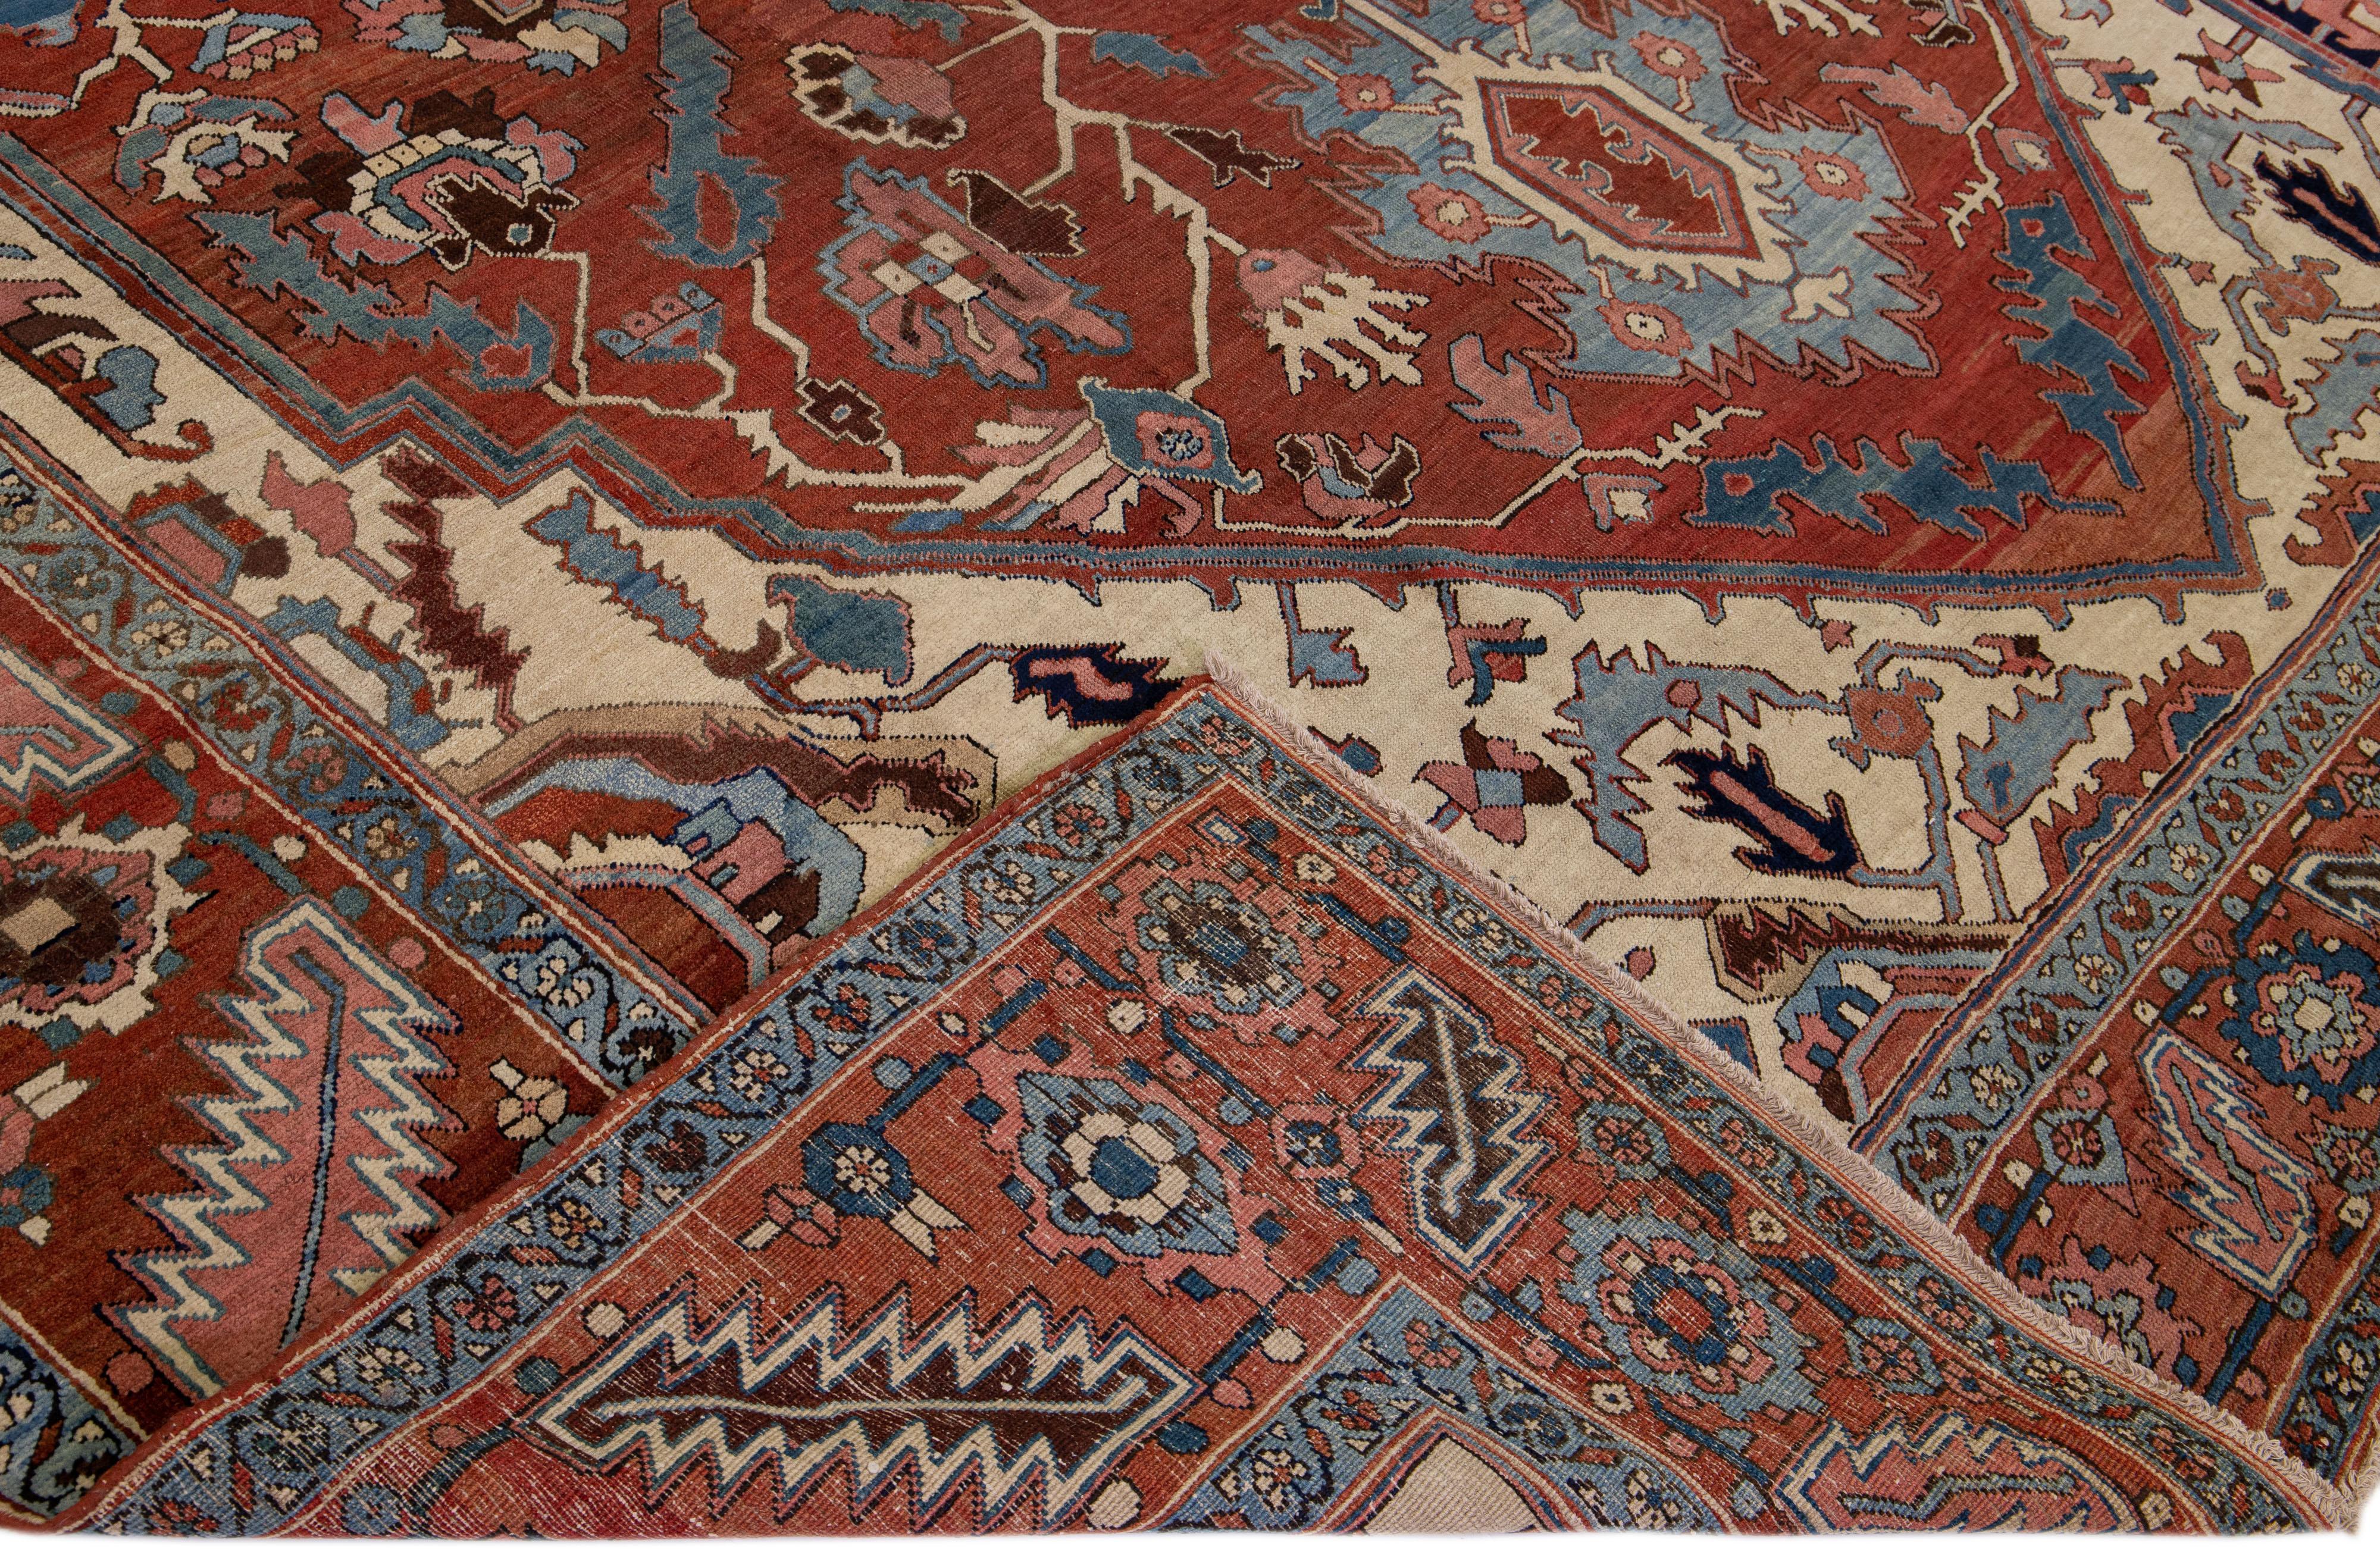 Schöner antiker Serapi-Teppich aus handgeknüpfter Wolle mit einem Feld in Beige und Rost. Dieser Perserteppich hat einen rostigen Rahmen und mehrfarbige Akzente in einem herrlichen geometrischen Blumenmedaillon-Muster.

Dieser Teppich misst: 11'2